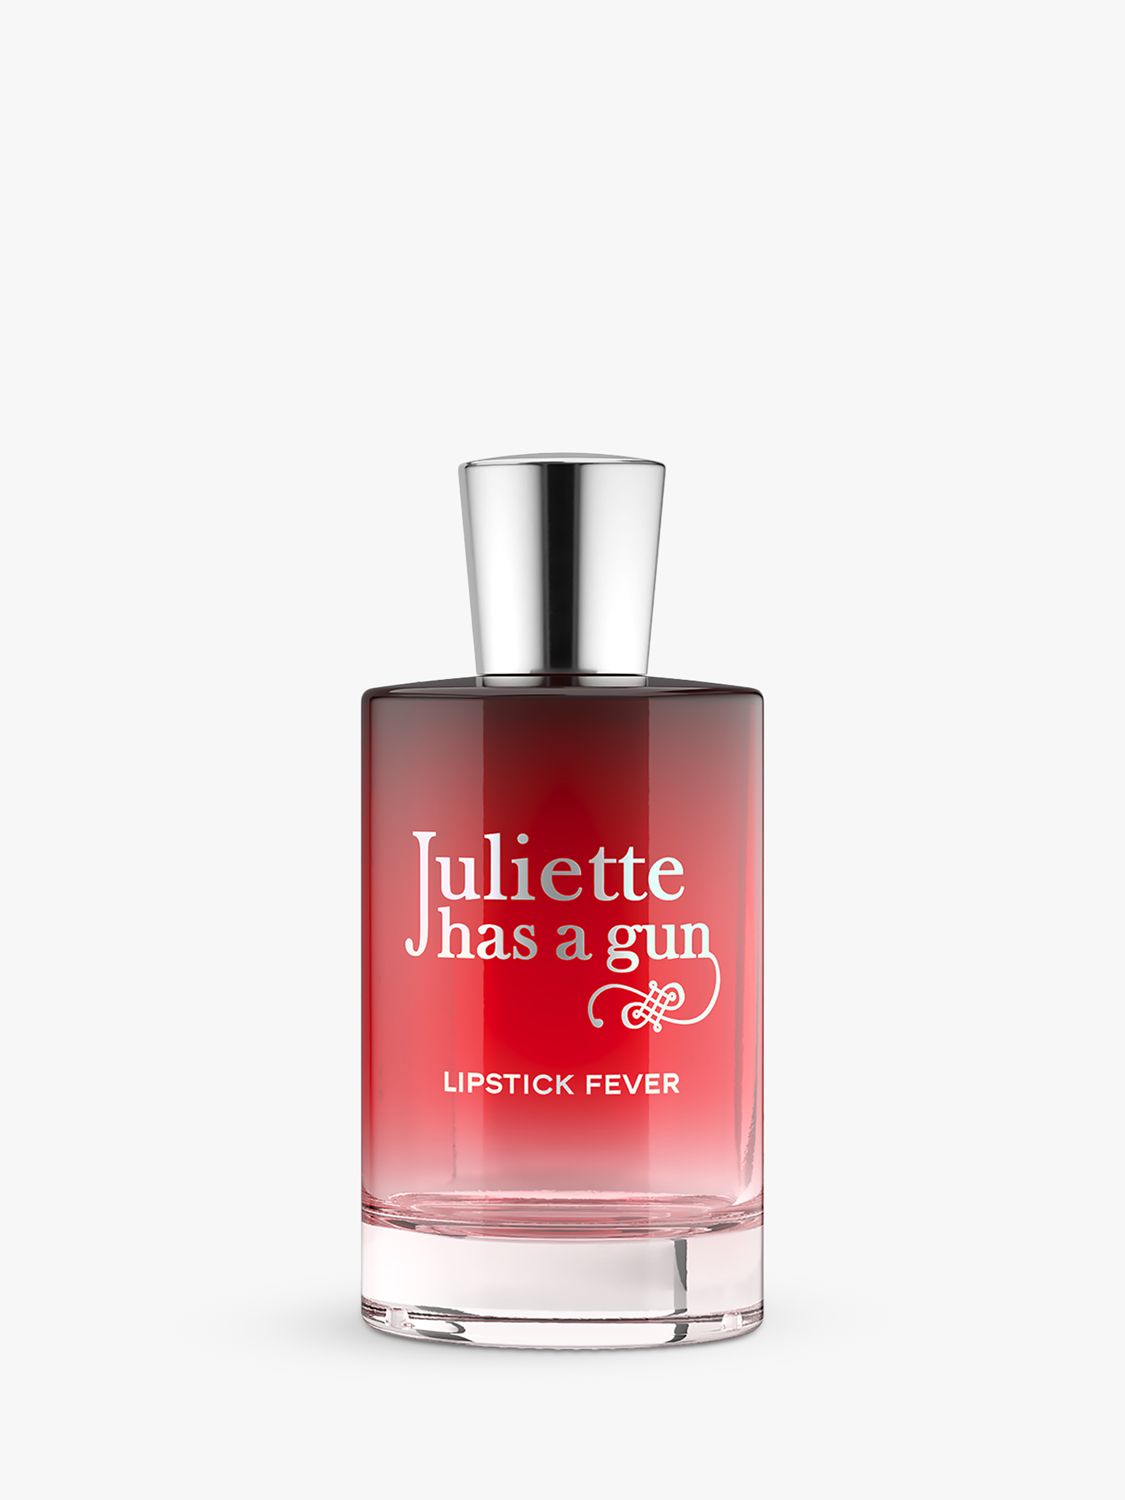 Juliette has a Gun Lipstick Fever Eau de Parfum, 50ml 1